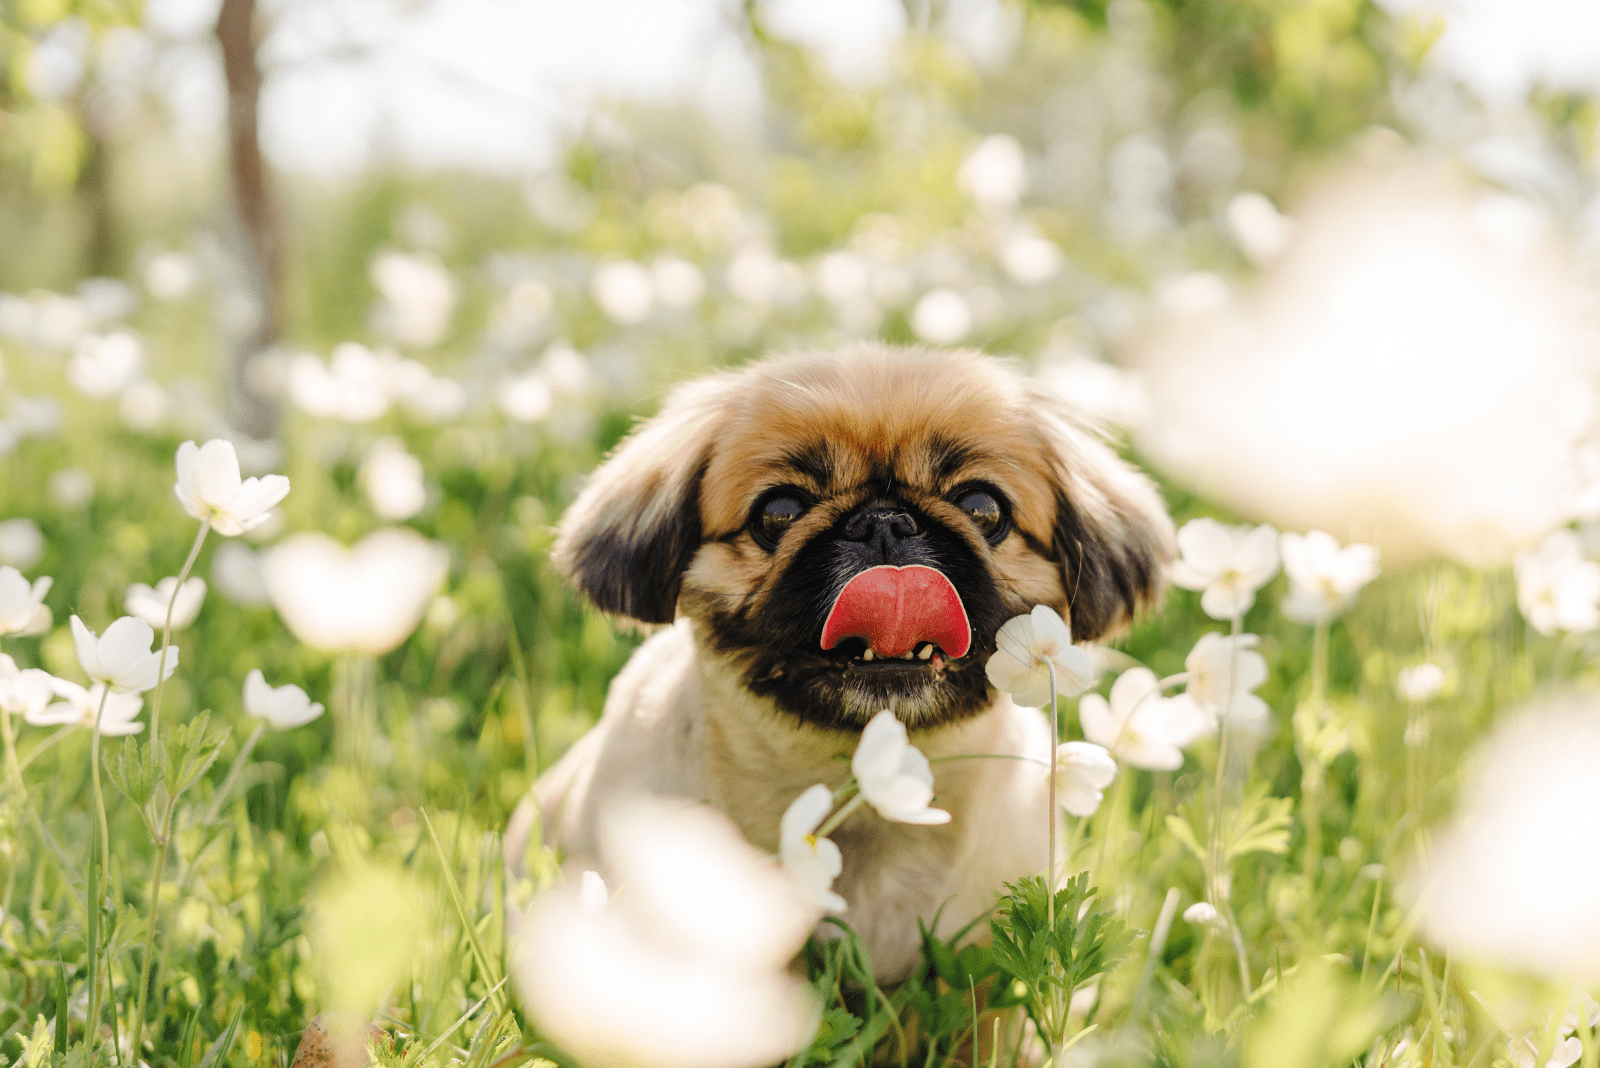 Pekingese puppy enjoys a meadow full of flowers